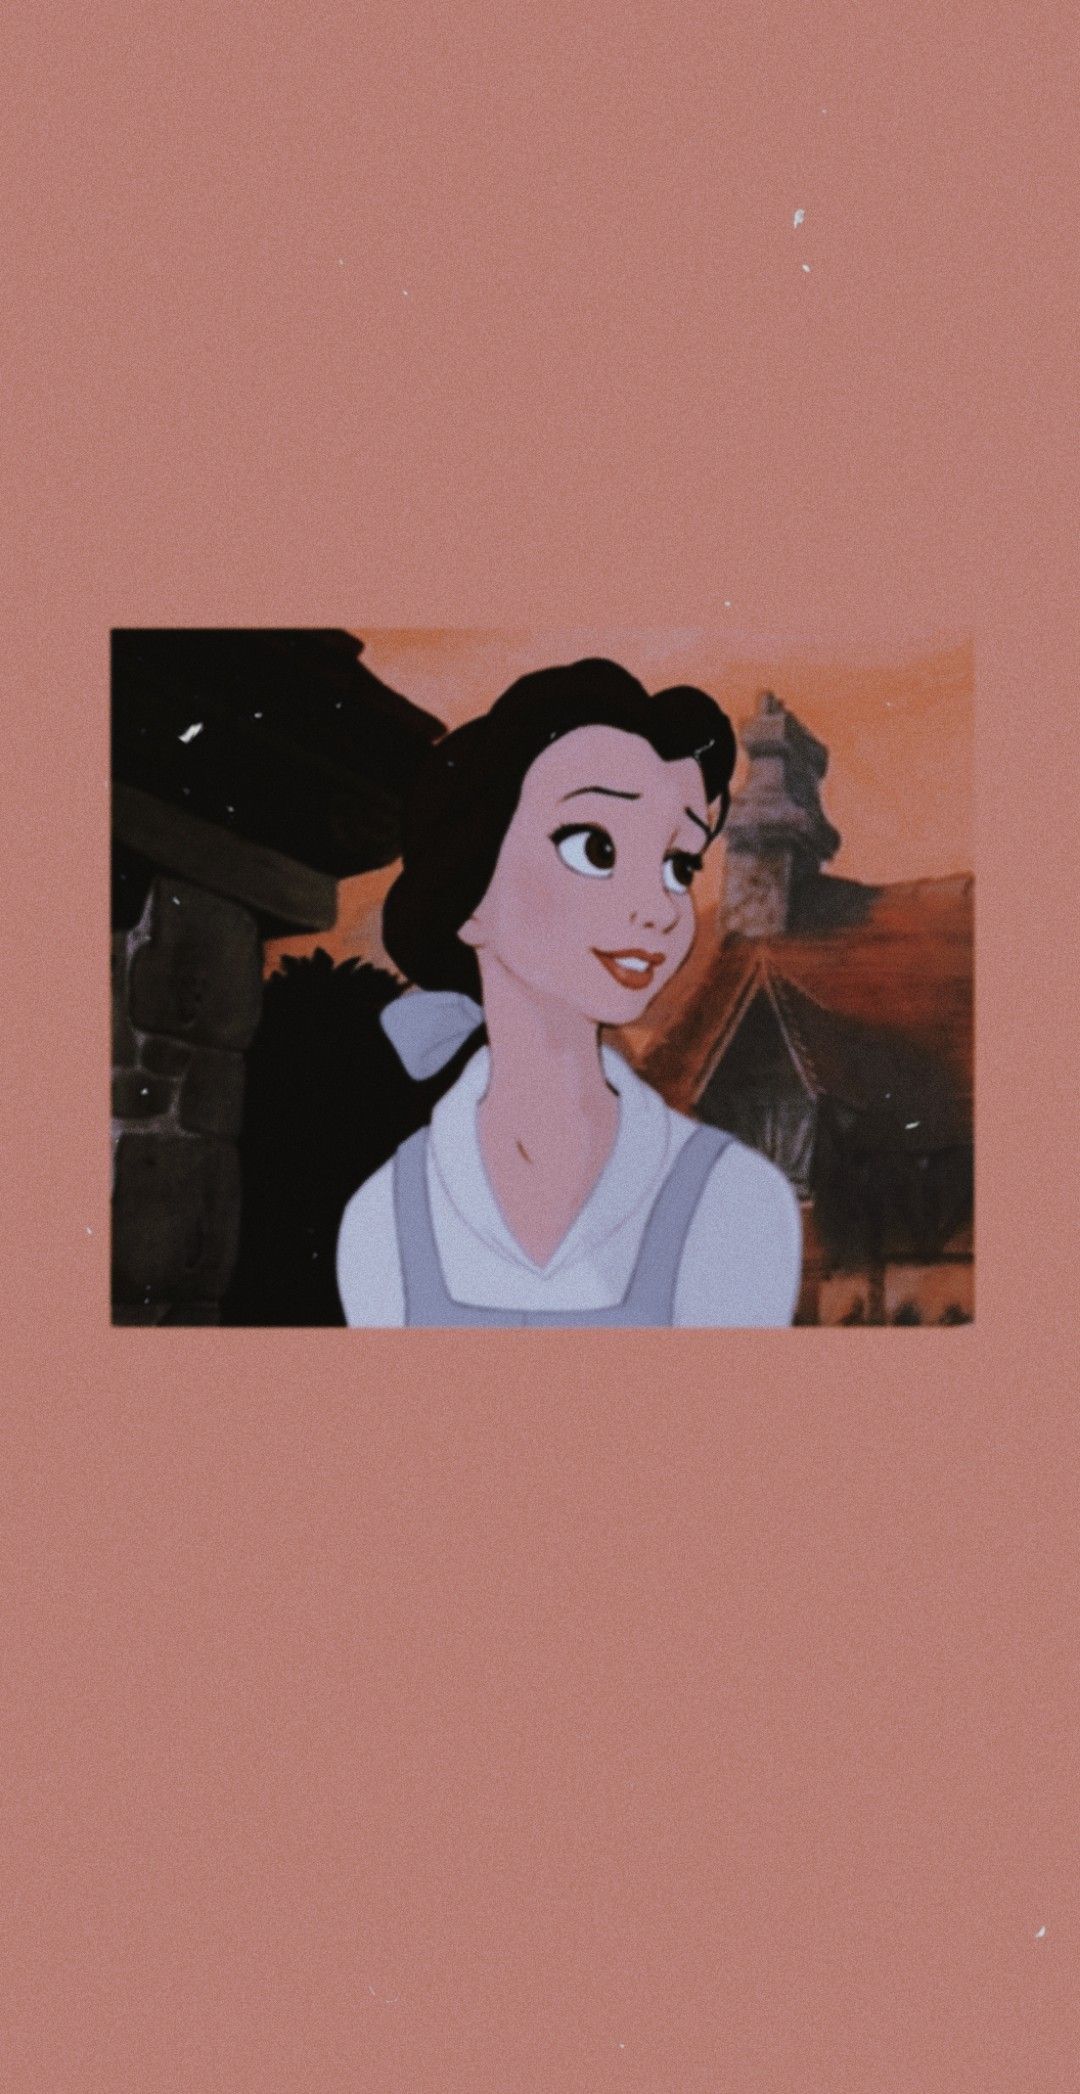 Aesthetic Disney Princess Wallpaper